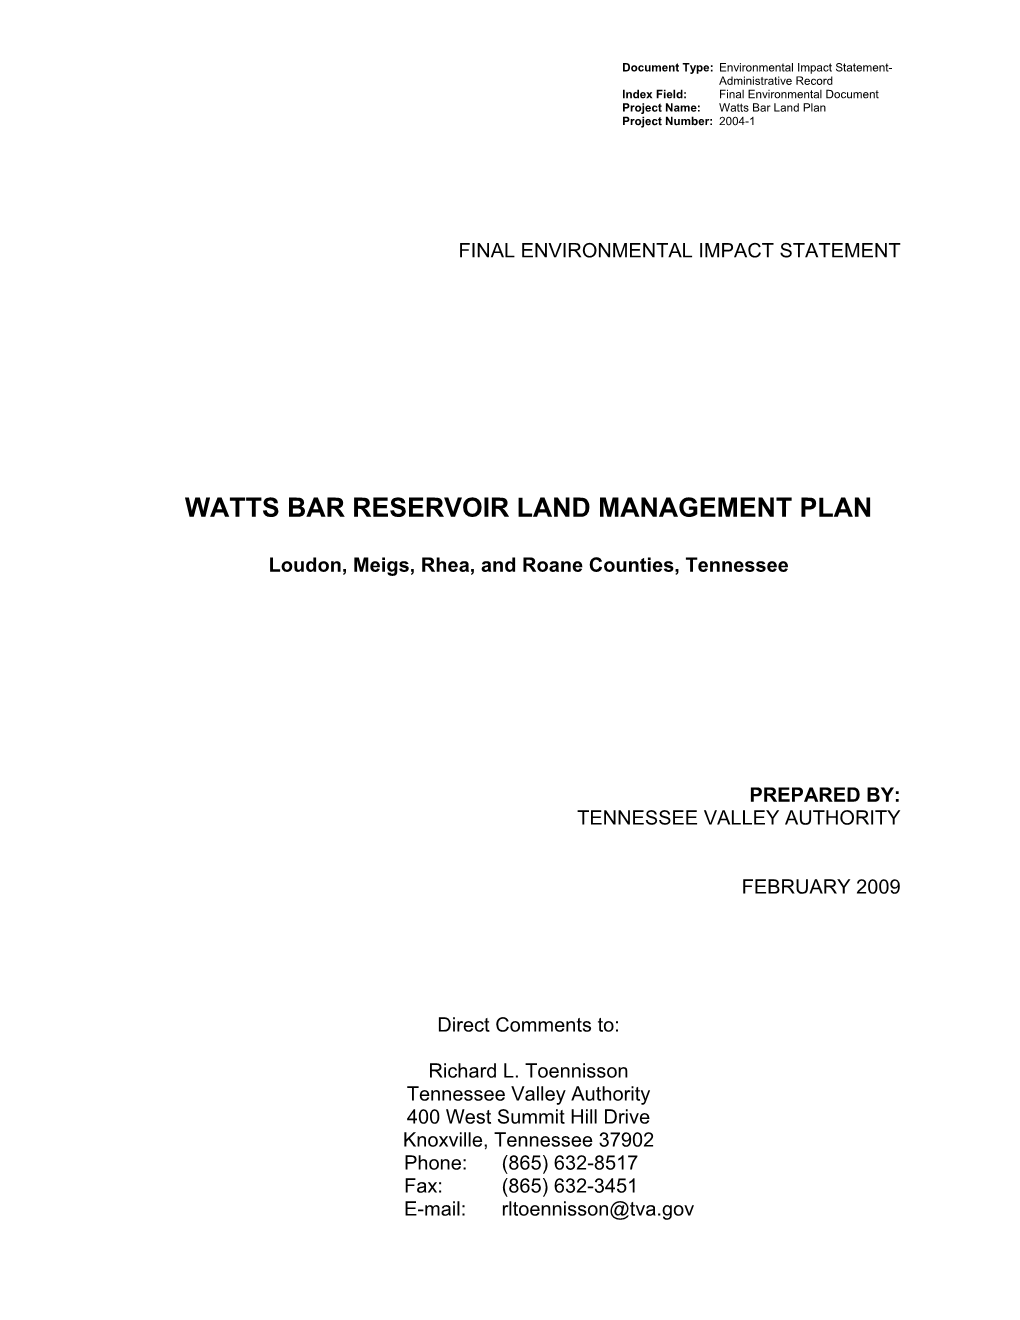 Watts Bar Reservoir Land Management Plan